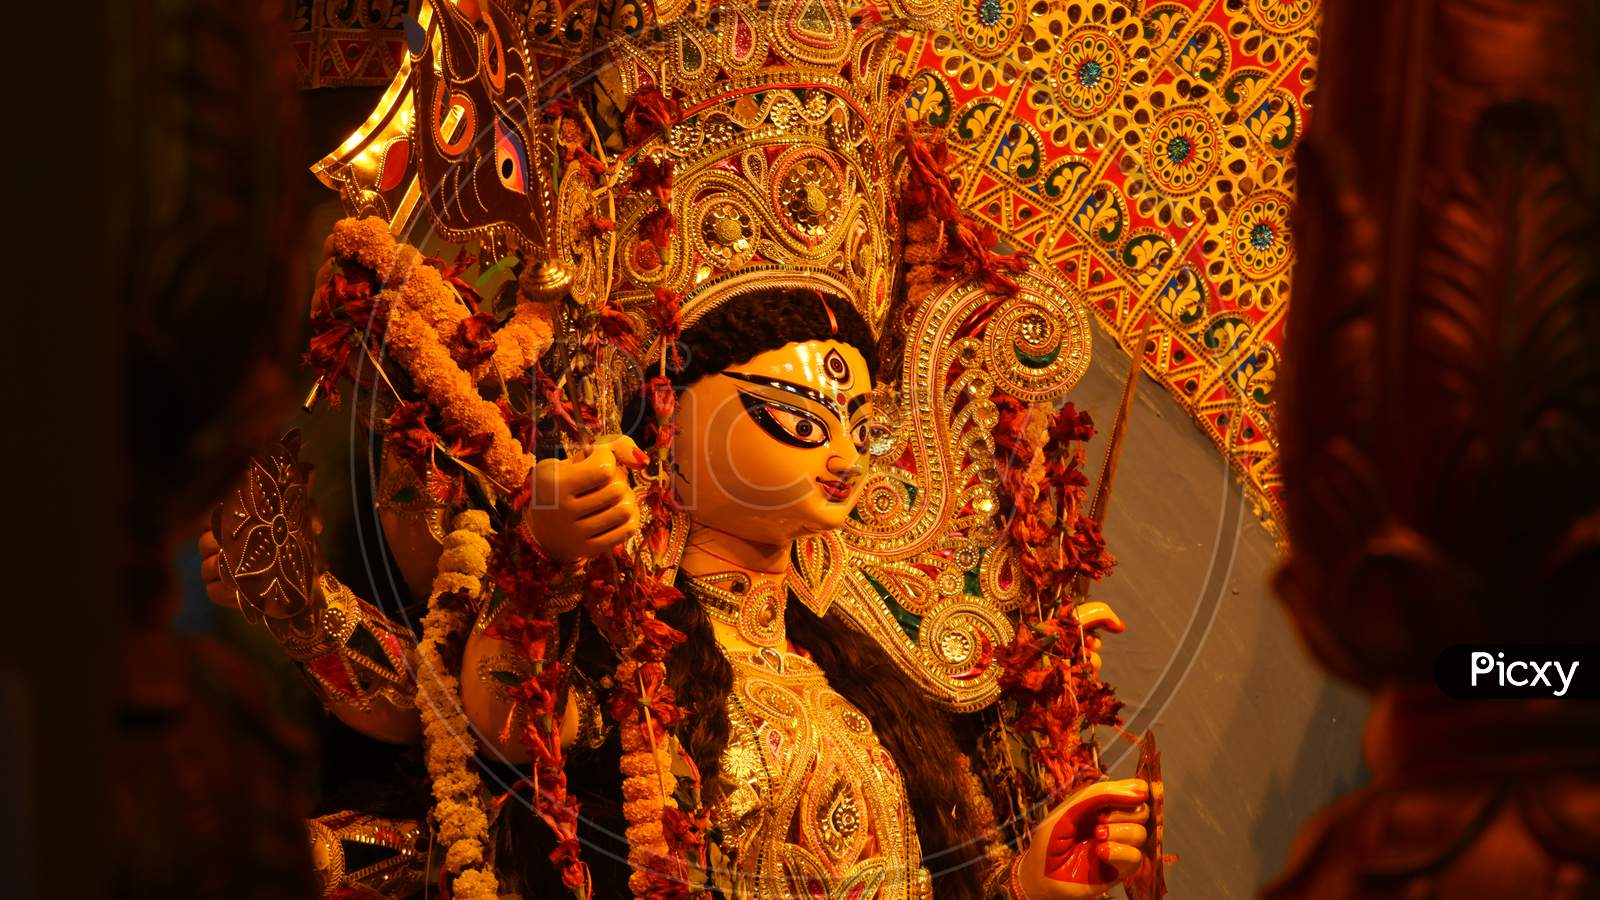 Image Of Goddess Maa Durga From Side Angle.